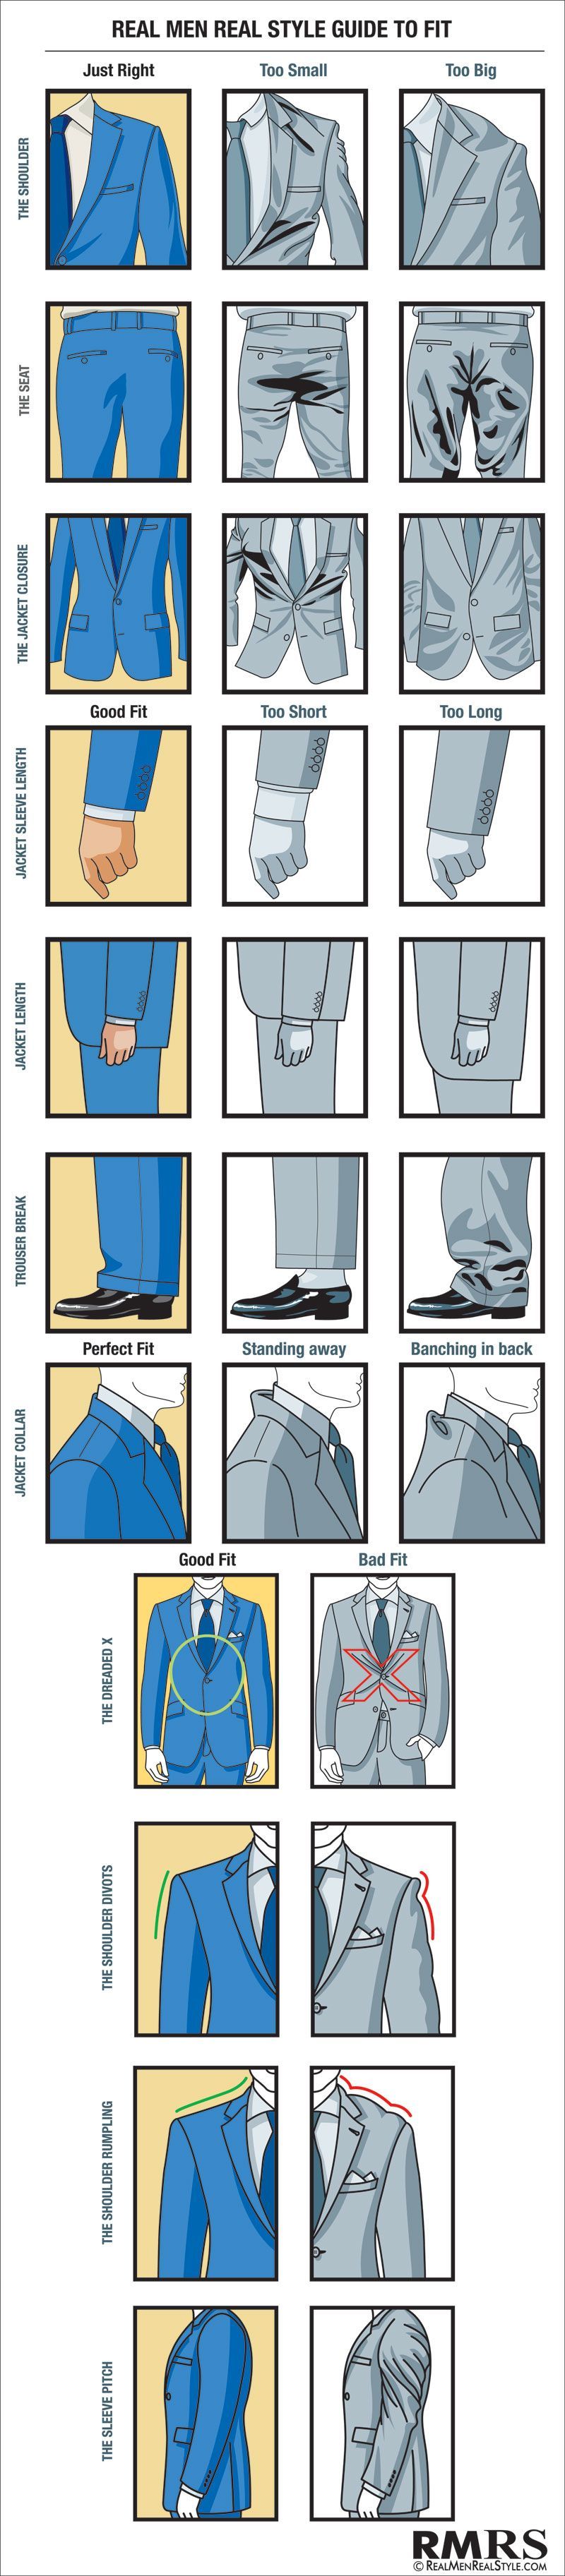 How A Man’s Suit Should Fit – Visual Suit Fit Guide – Proper Fitting Suits Chart (via @Antonio Centeno)